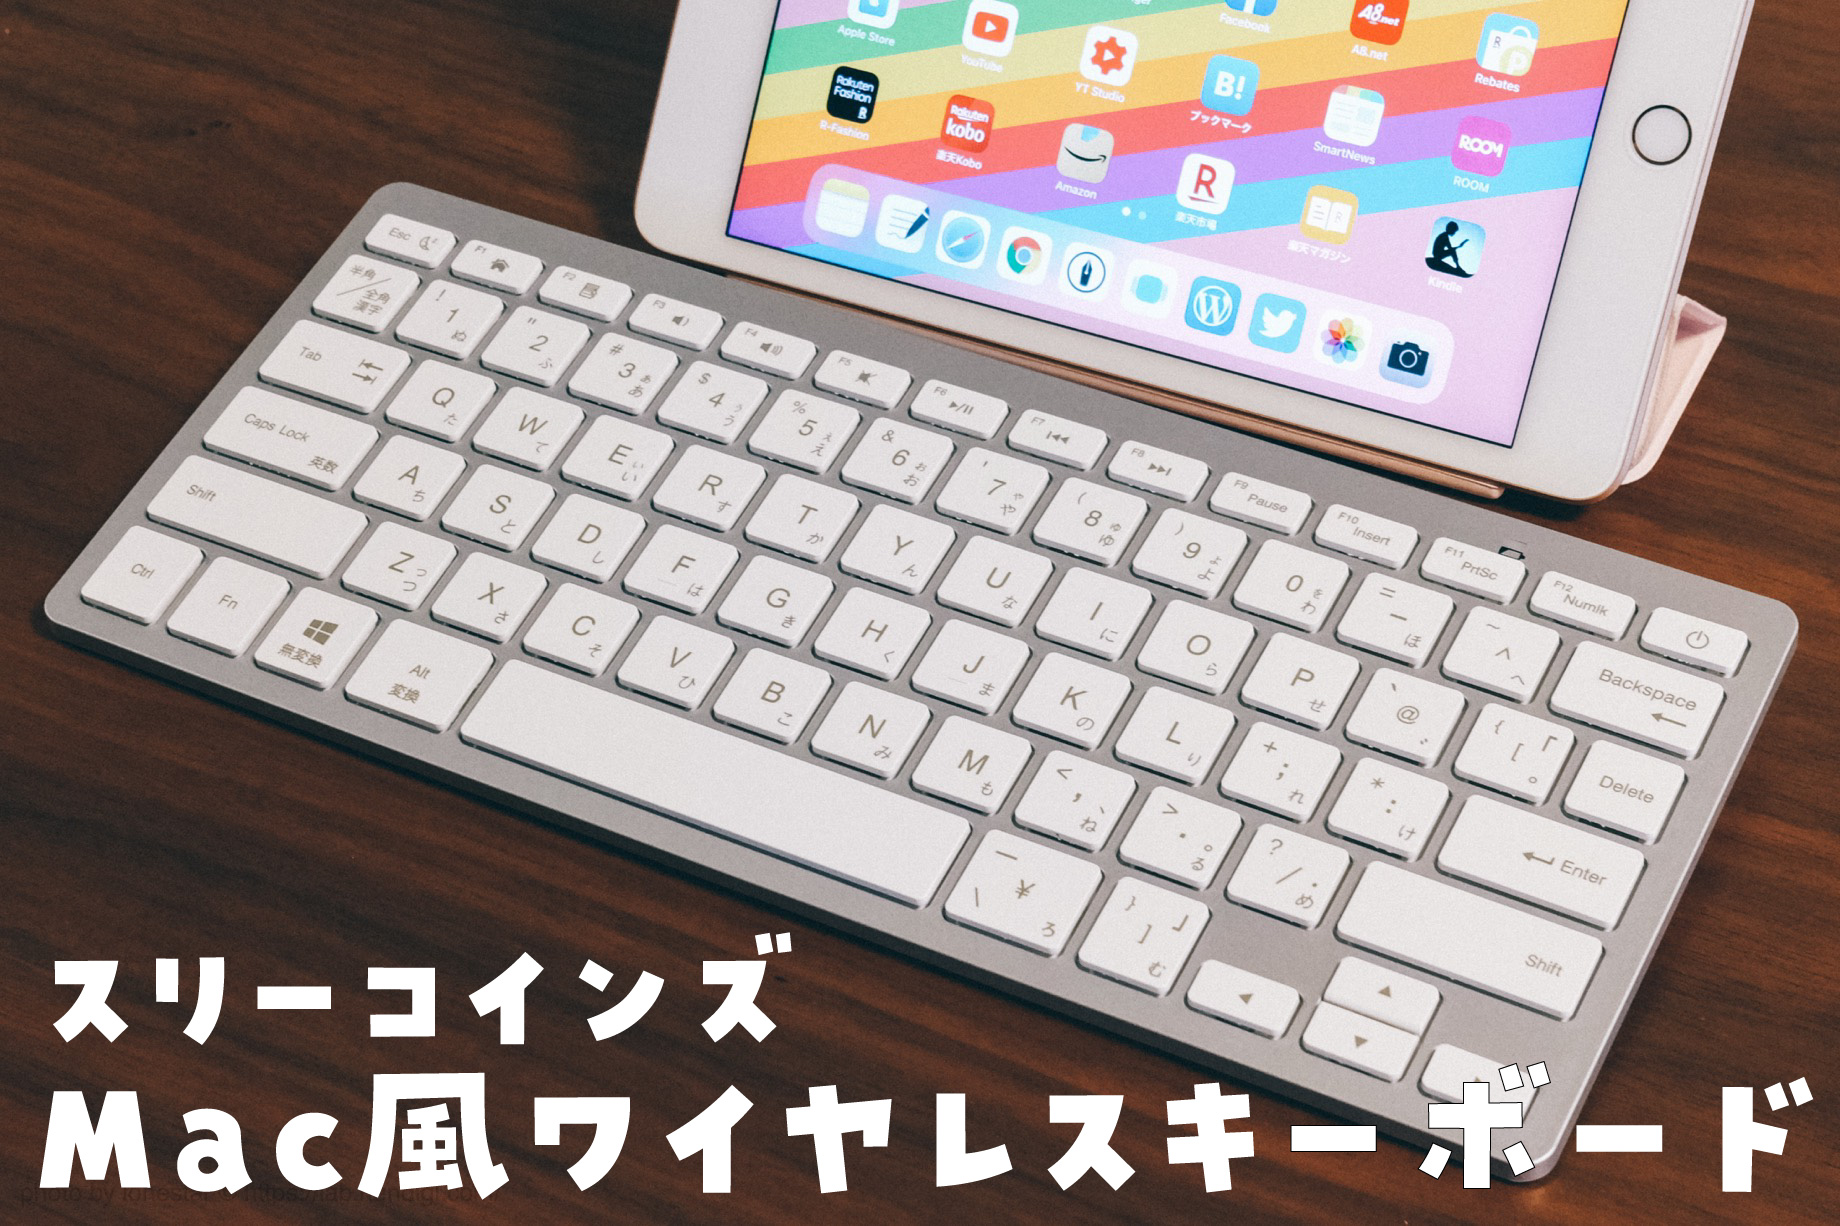 Mac風】3COINSの激安ワイヤレスキーボードをiPad miniに接続してみた【実機レビュー】